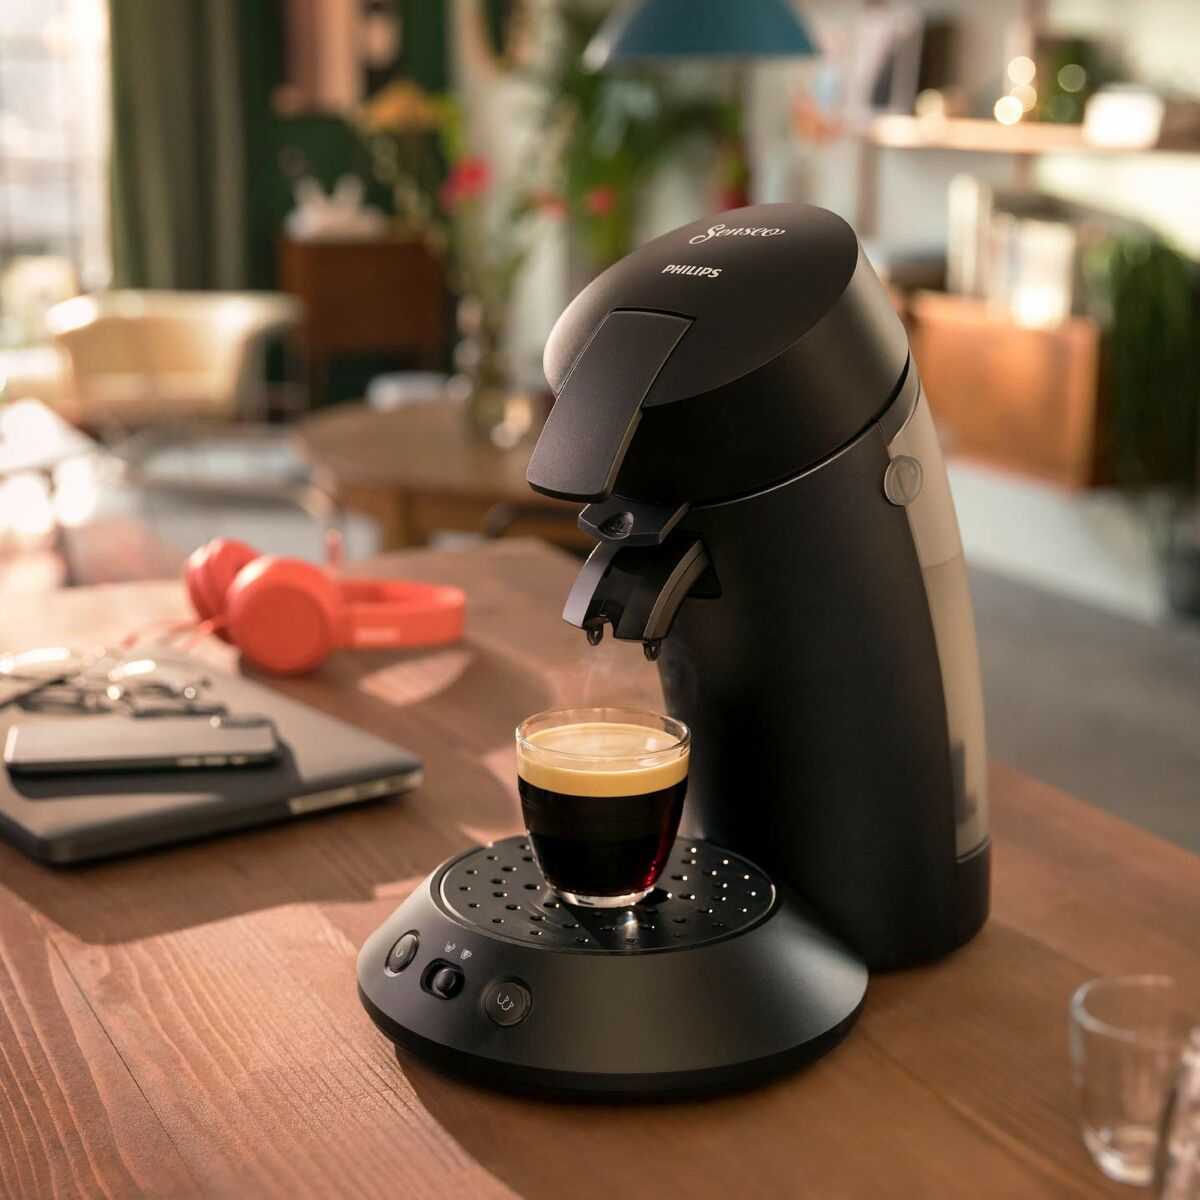 Capsule Coffee Machine Philips CSA210 / 61